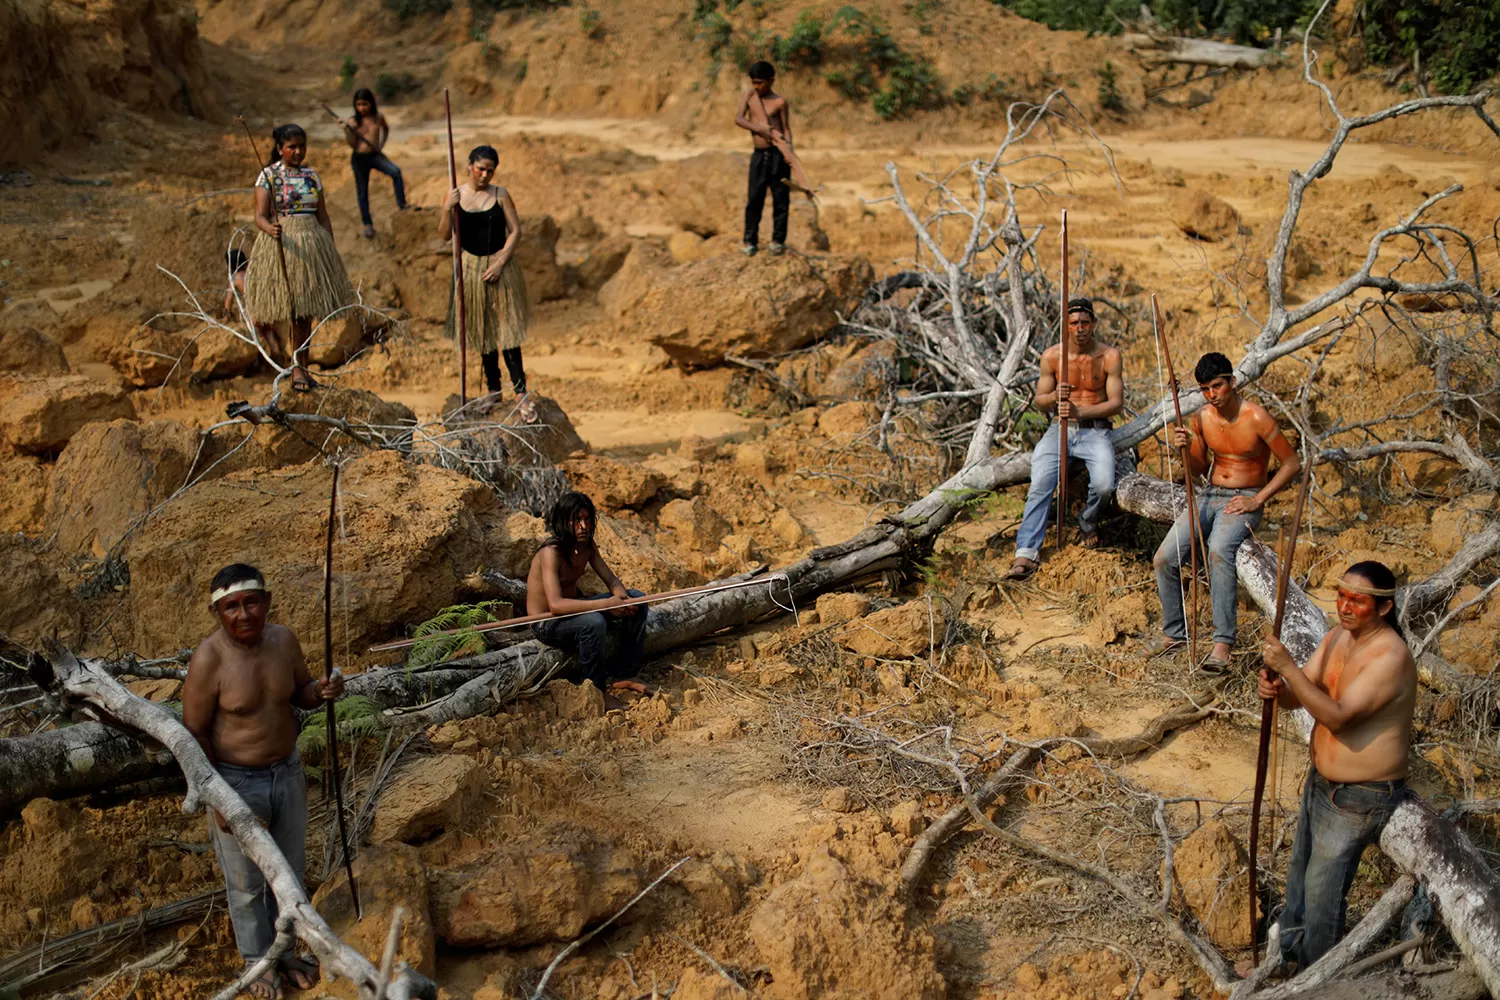 Las consecuencias ambientales y sociales de la transformación de la Amazonía son incalculables